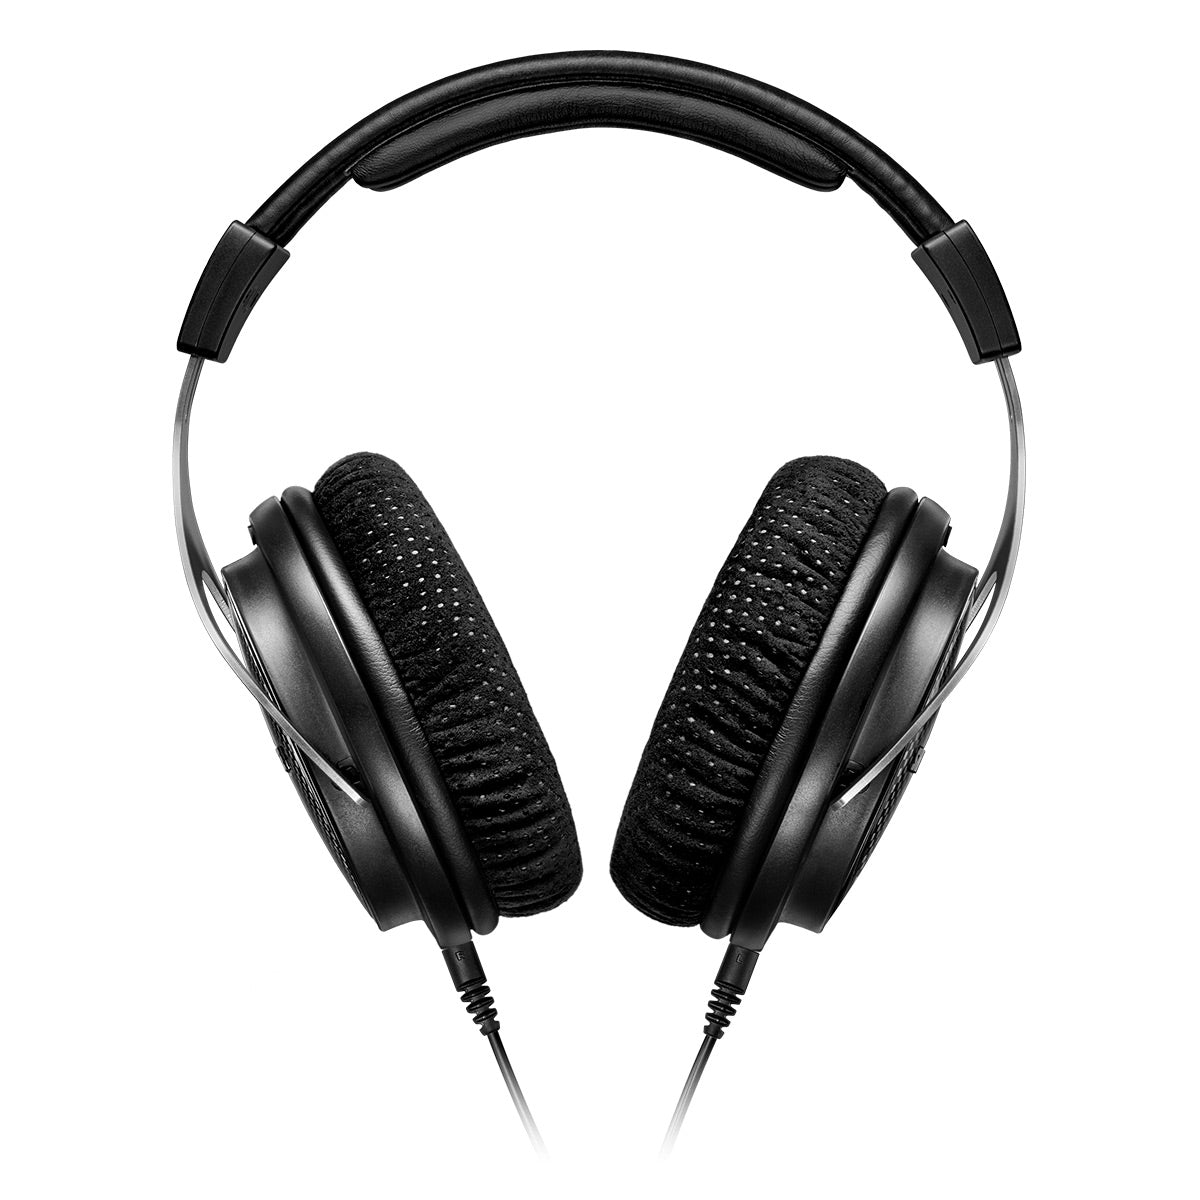 Shure SRH1540 Premium Closed-Back Over-Ear Headphones